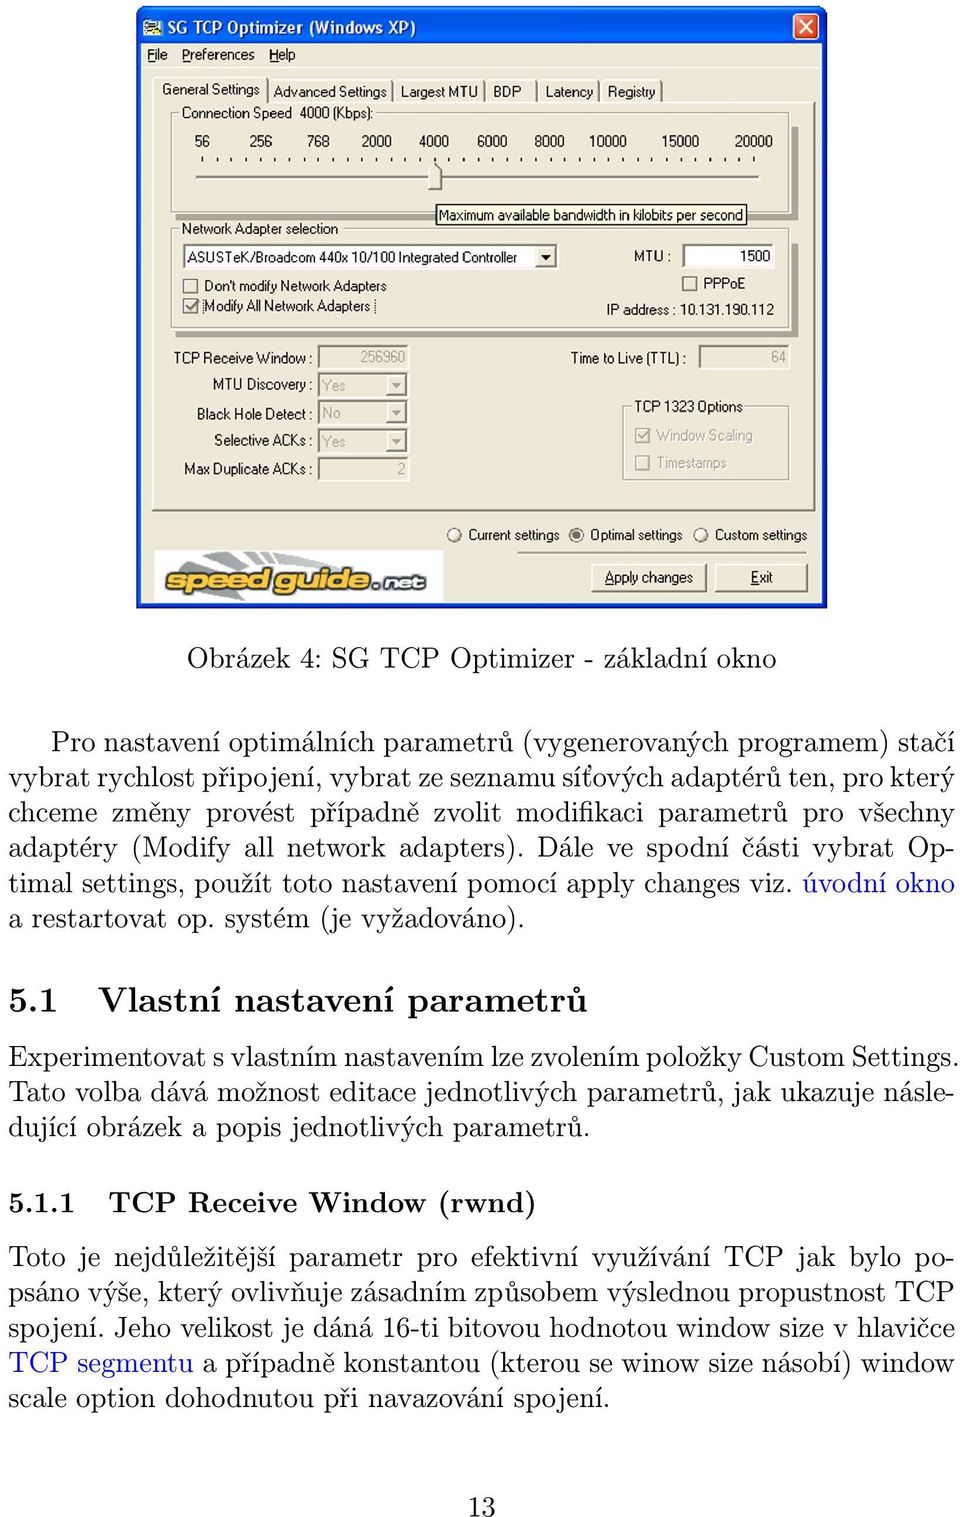 úvodní okno a restartovat op. systém (je vyžadováno). 5.1 Vlastní nastavení parametrů Experimentovat s vlastním nastavením lze zvolením položky Custom Settings.